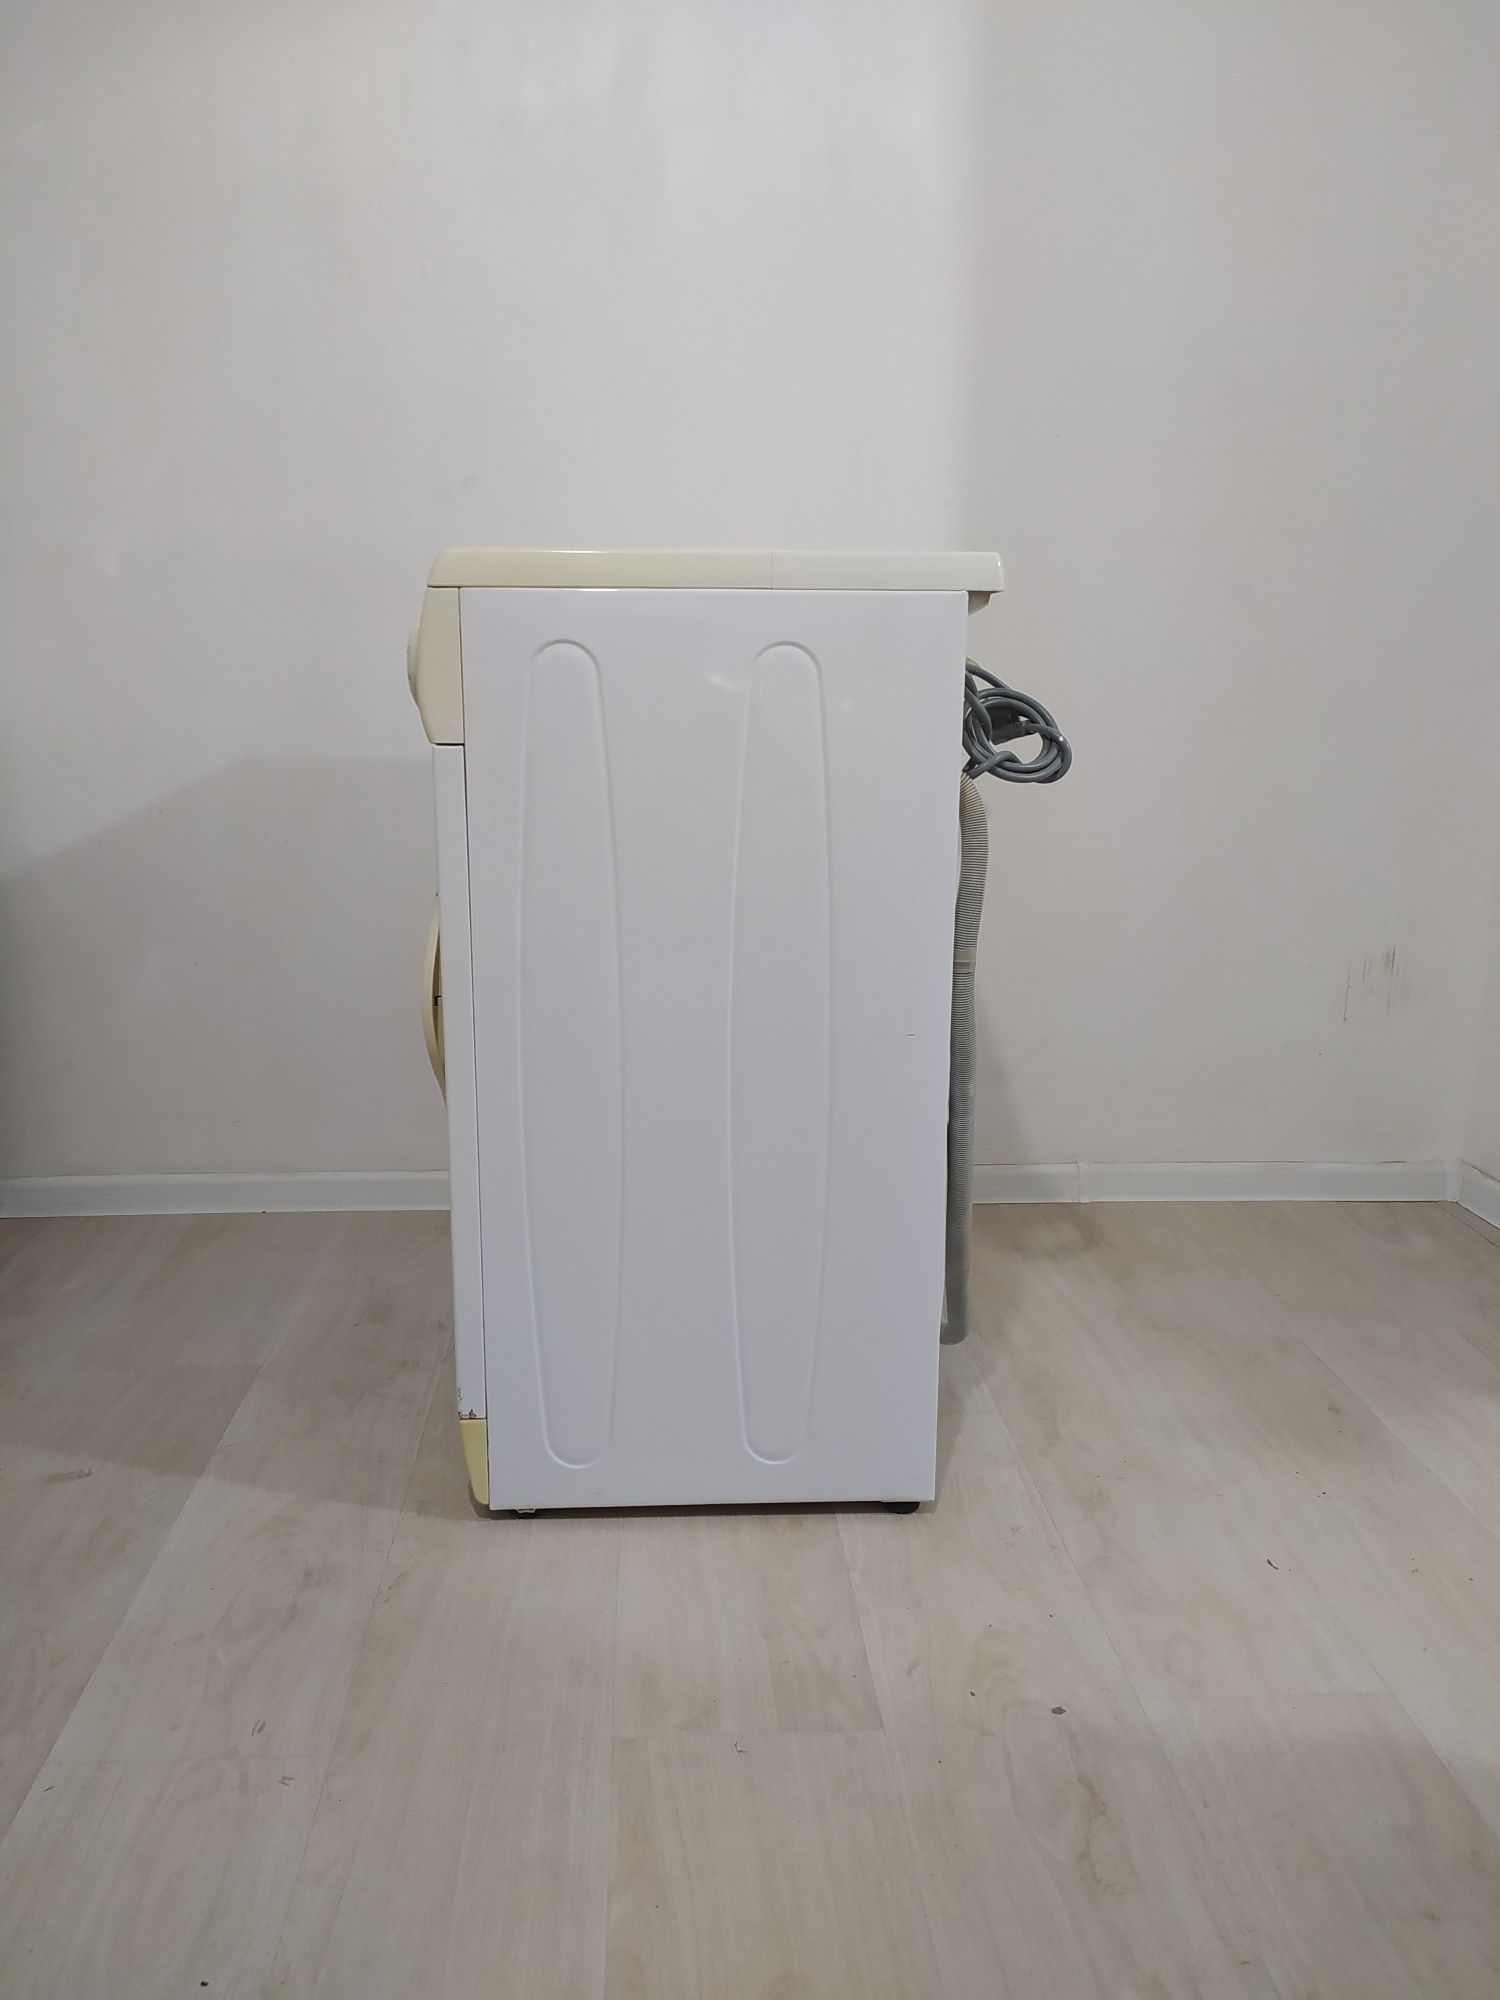 Продам стиральную машину LG на 5KG Купить в Алматы